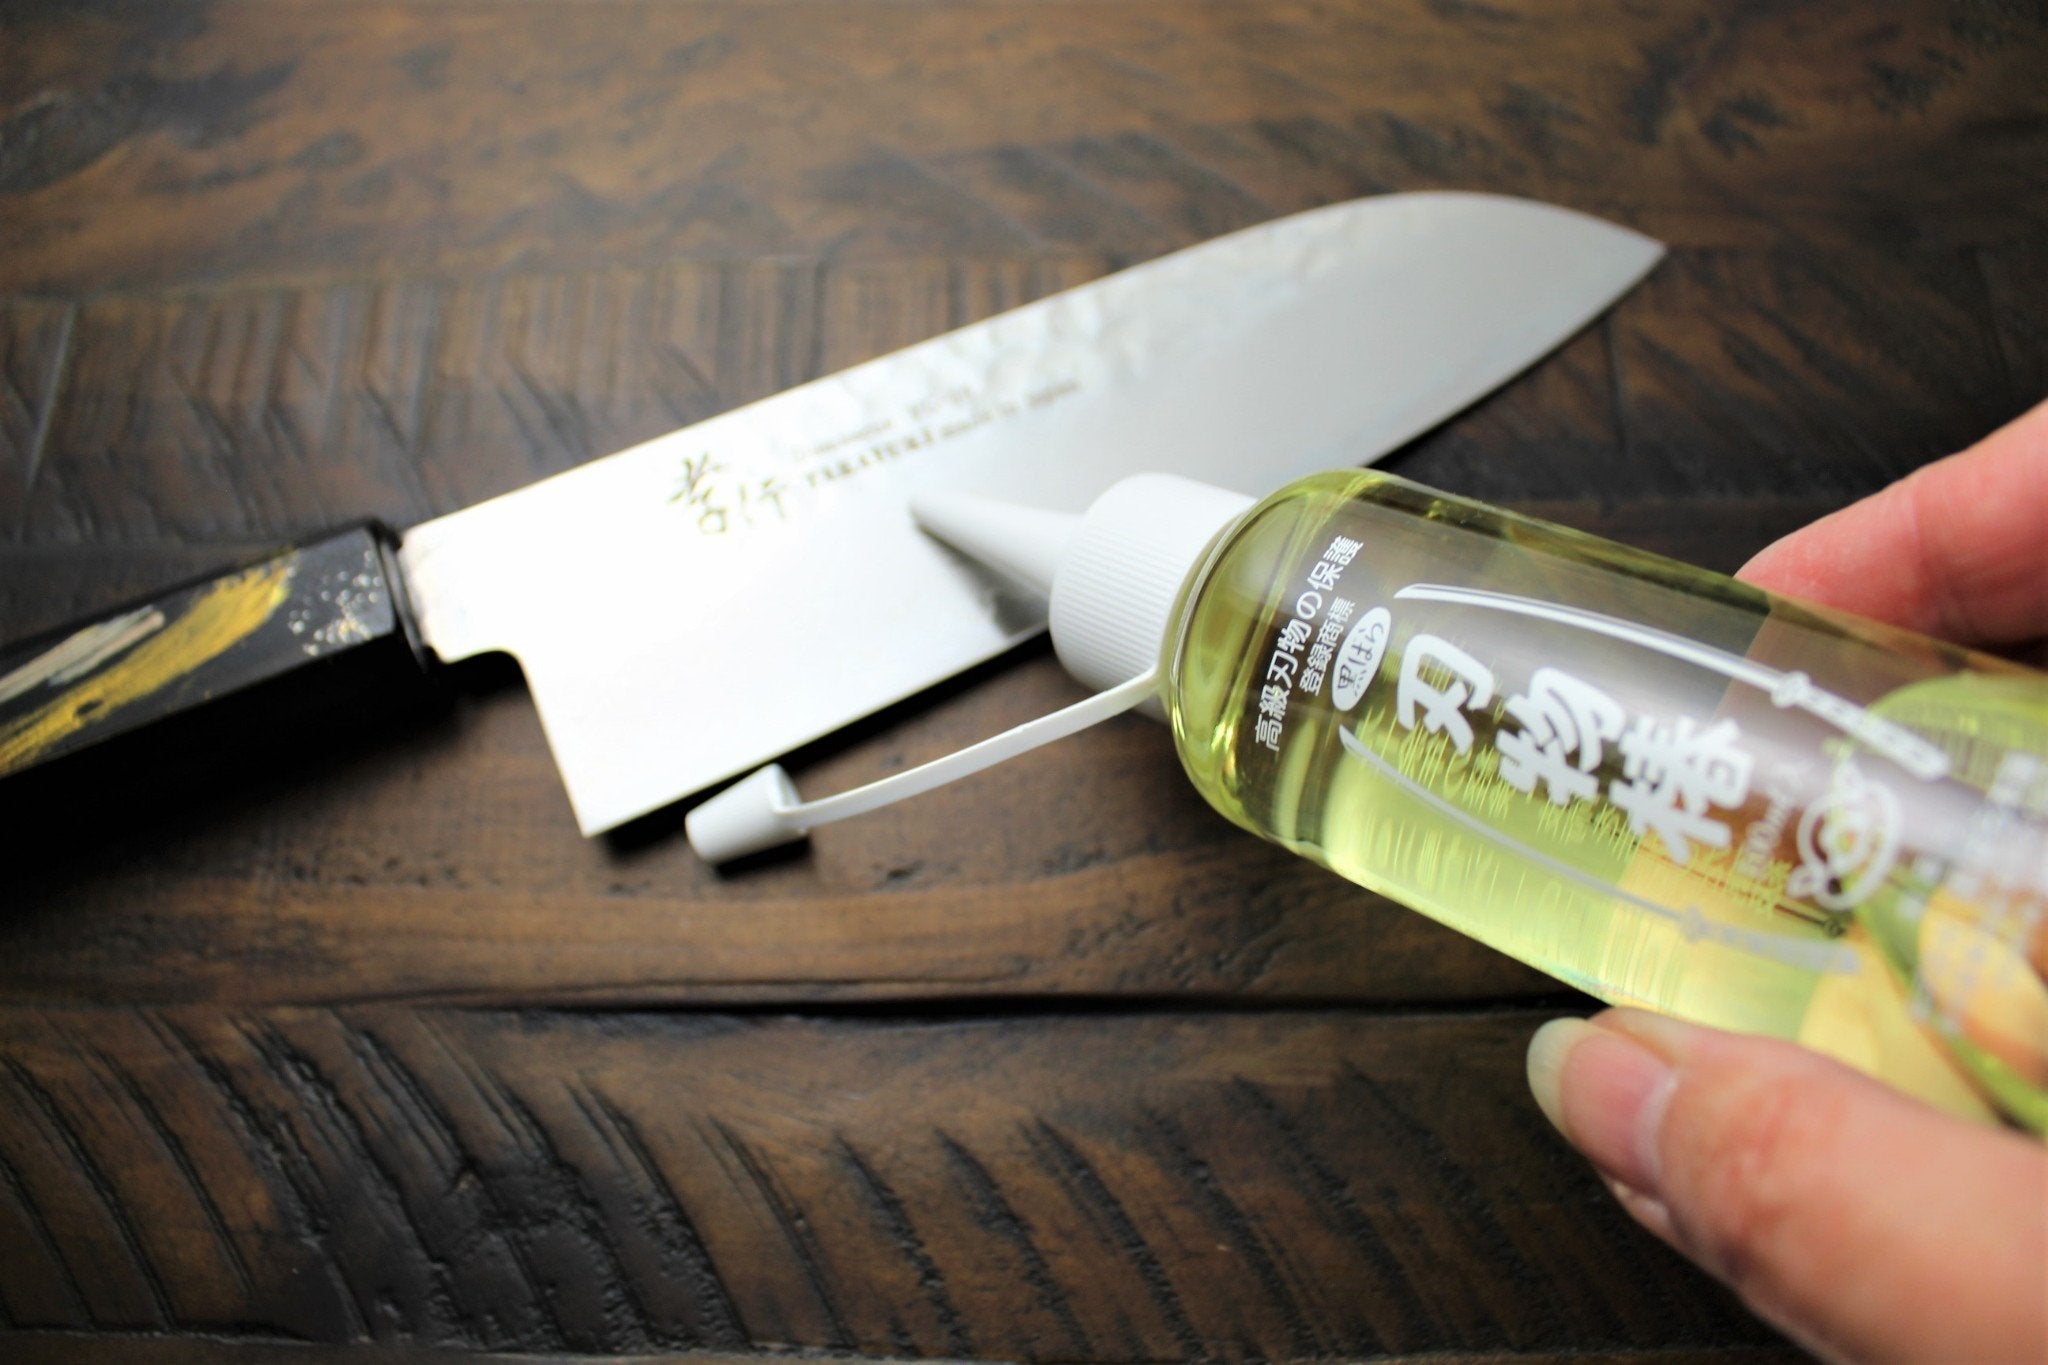 Knife Pivot Lube Organic Camellia Kitchen Knife Oil, 60mL Bottle